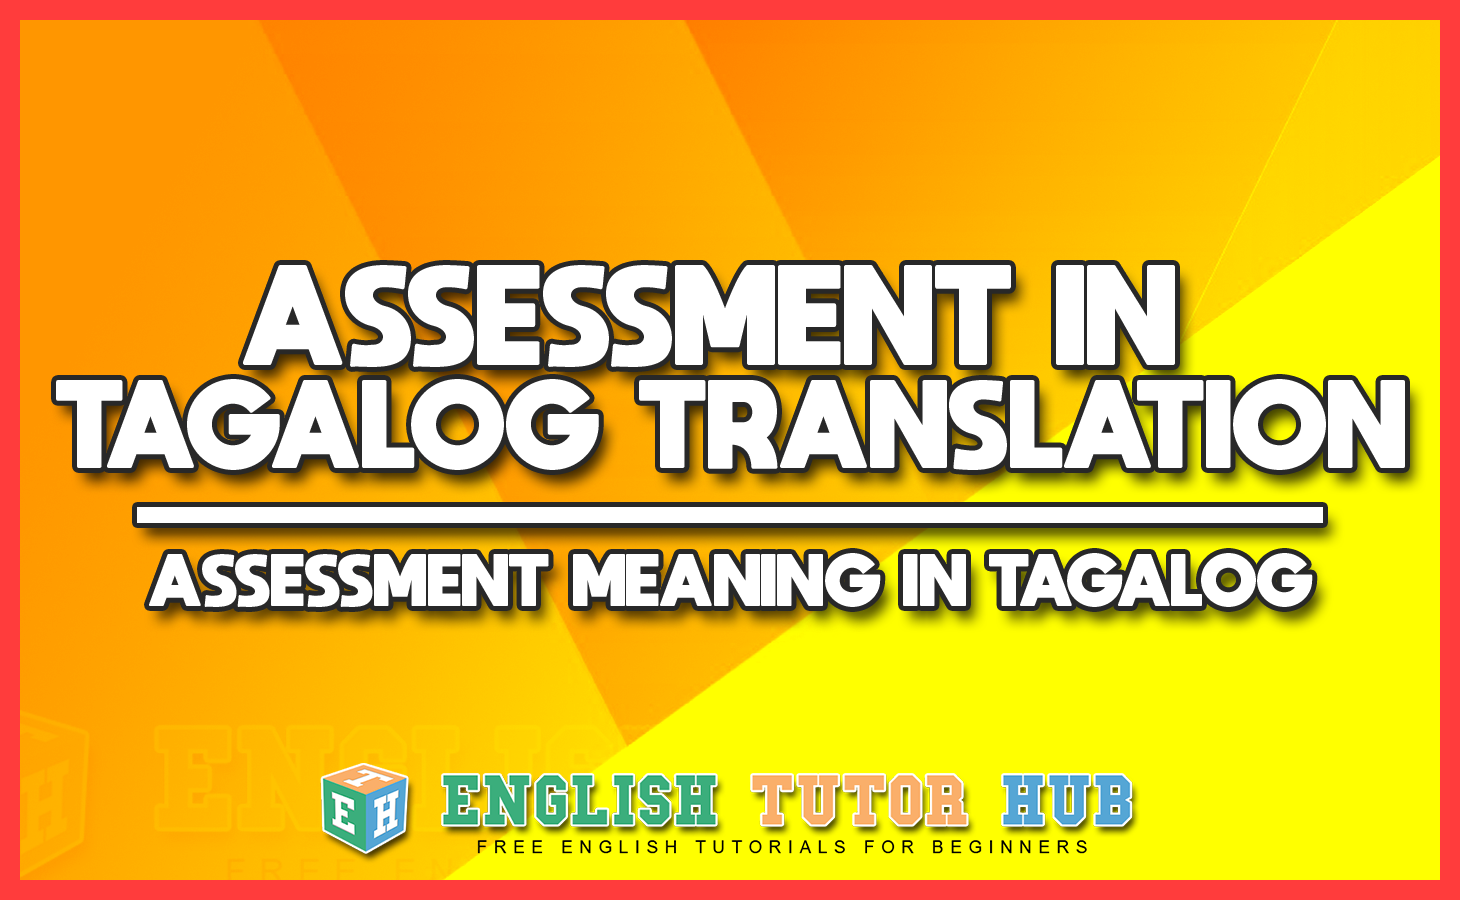 ASSESSMENT IN TAGALOG TRANSLATION